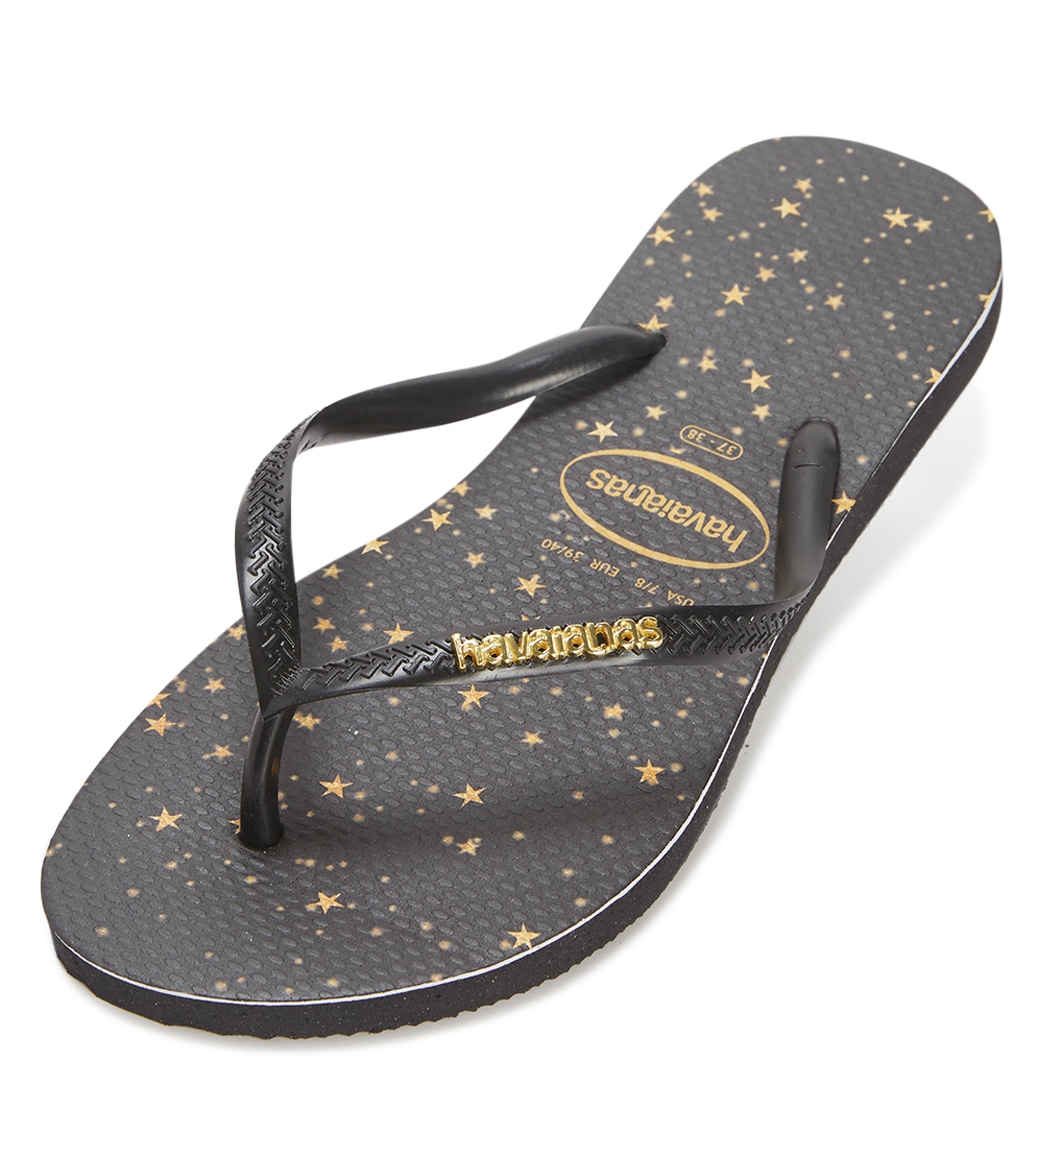 Havaianas Women's Slim Metallic Print Sandals - Black/Light Golden 11/12 - Swimoutlet.com